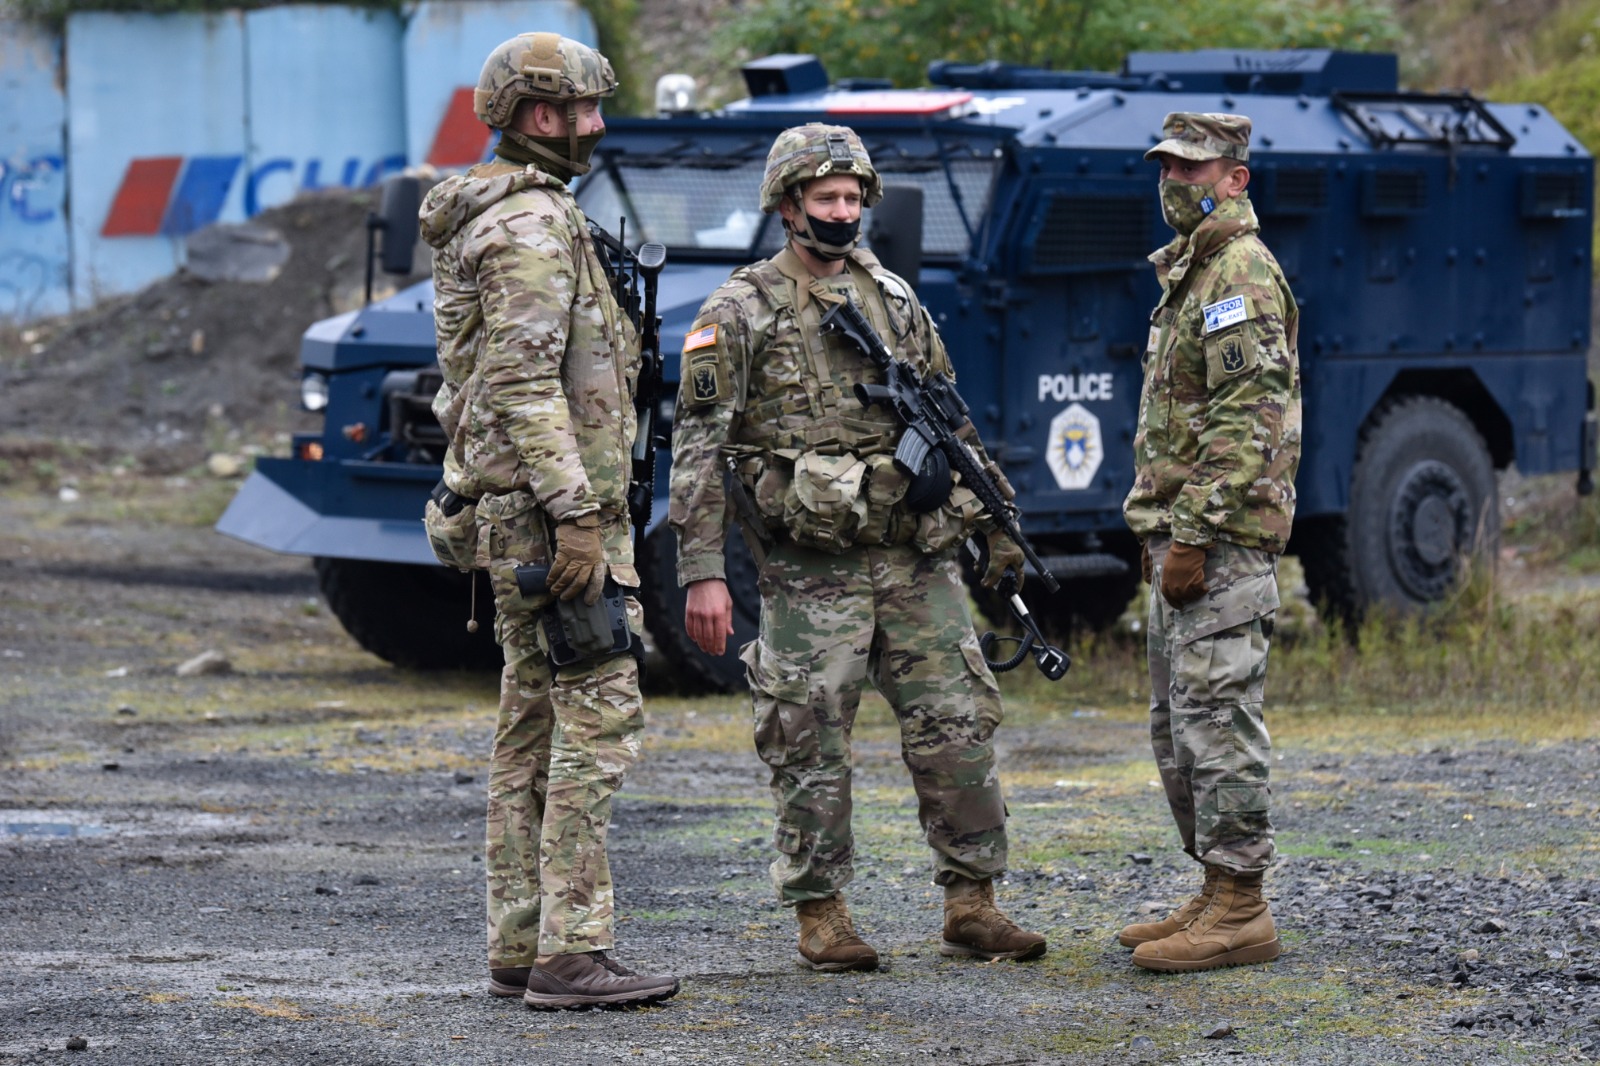 عناصر من قوات حفظ السلام التابعة لحلف شمال الأطلسي (الناتو) بالقرب من الحدود بين كوسوفو وصربيا. 2 أكتوبر 2021